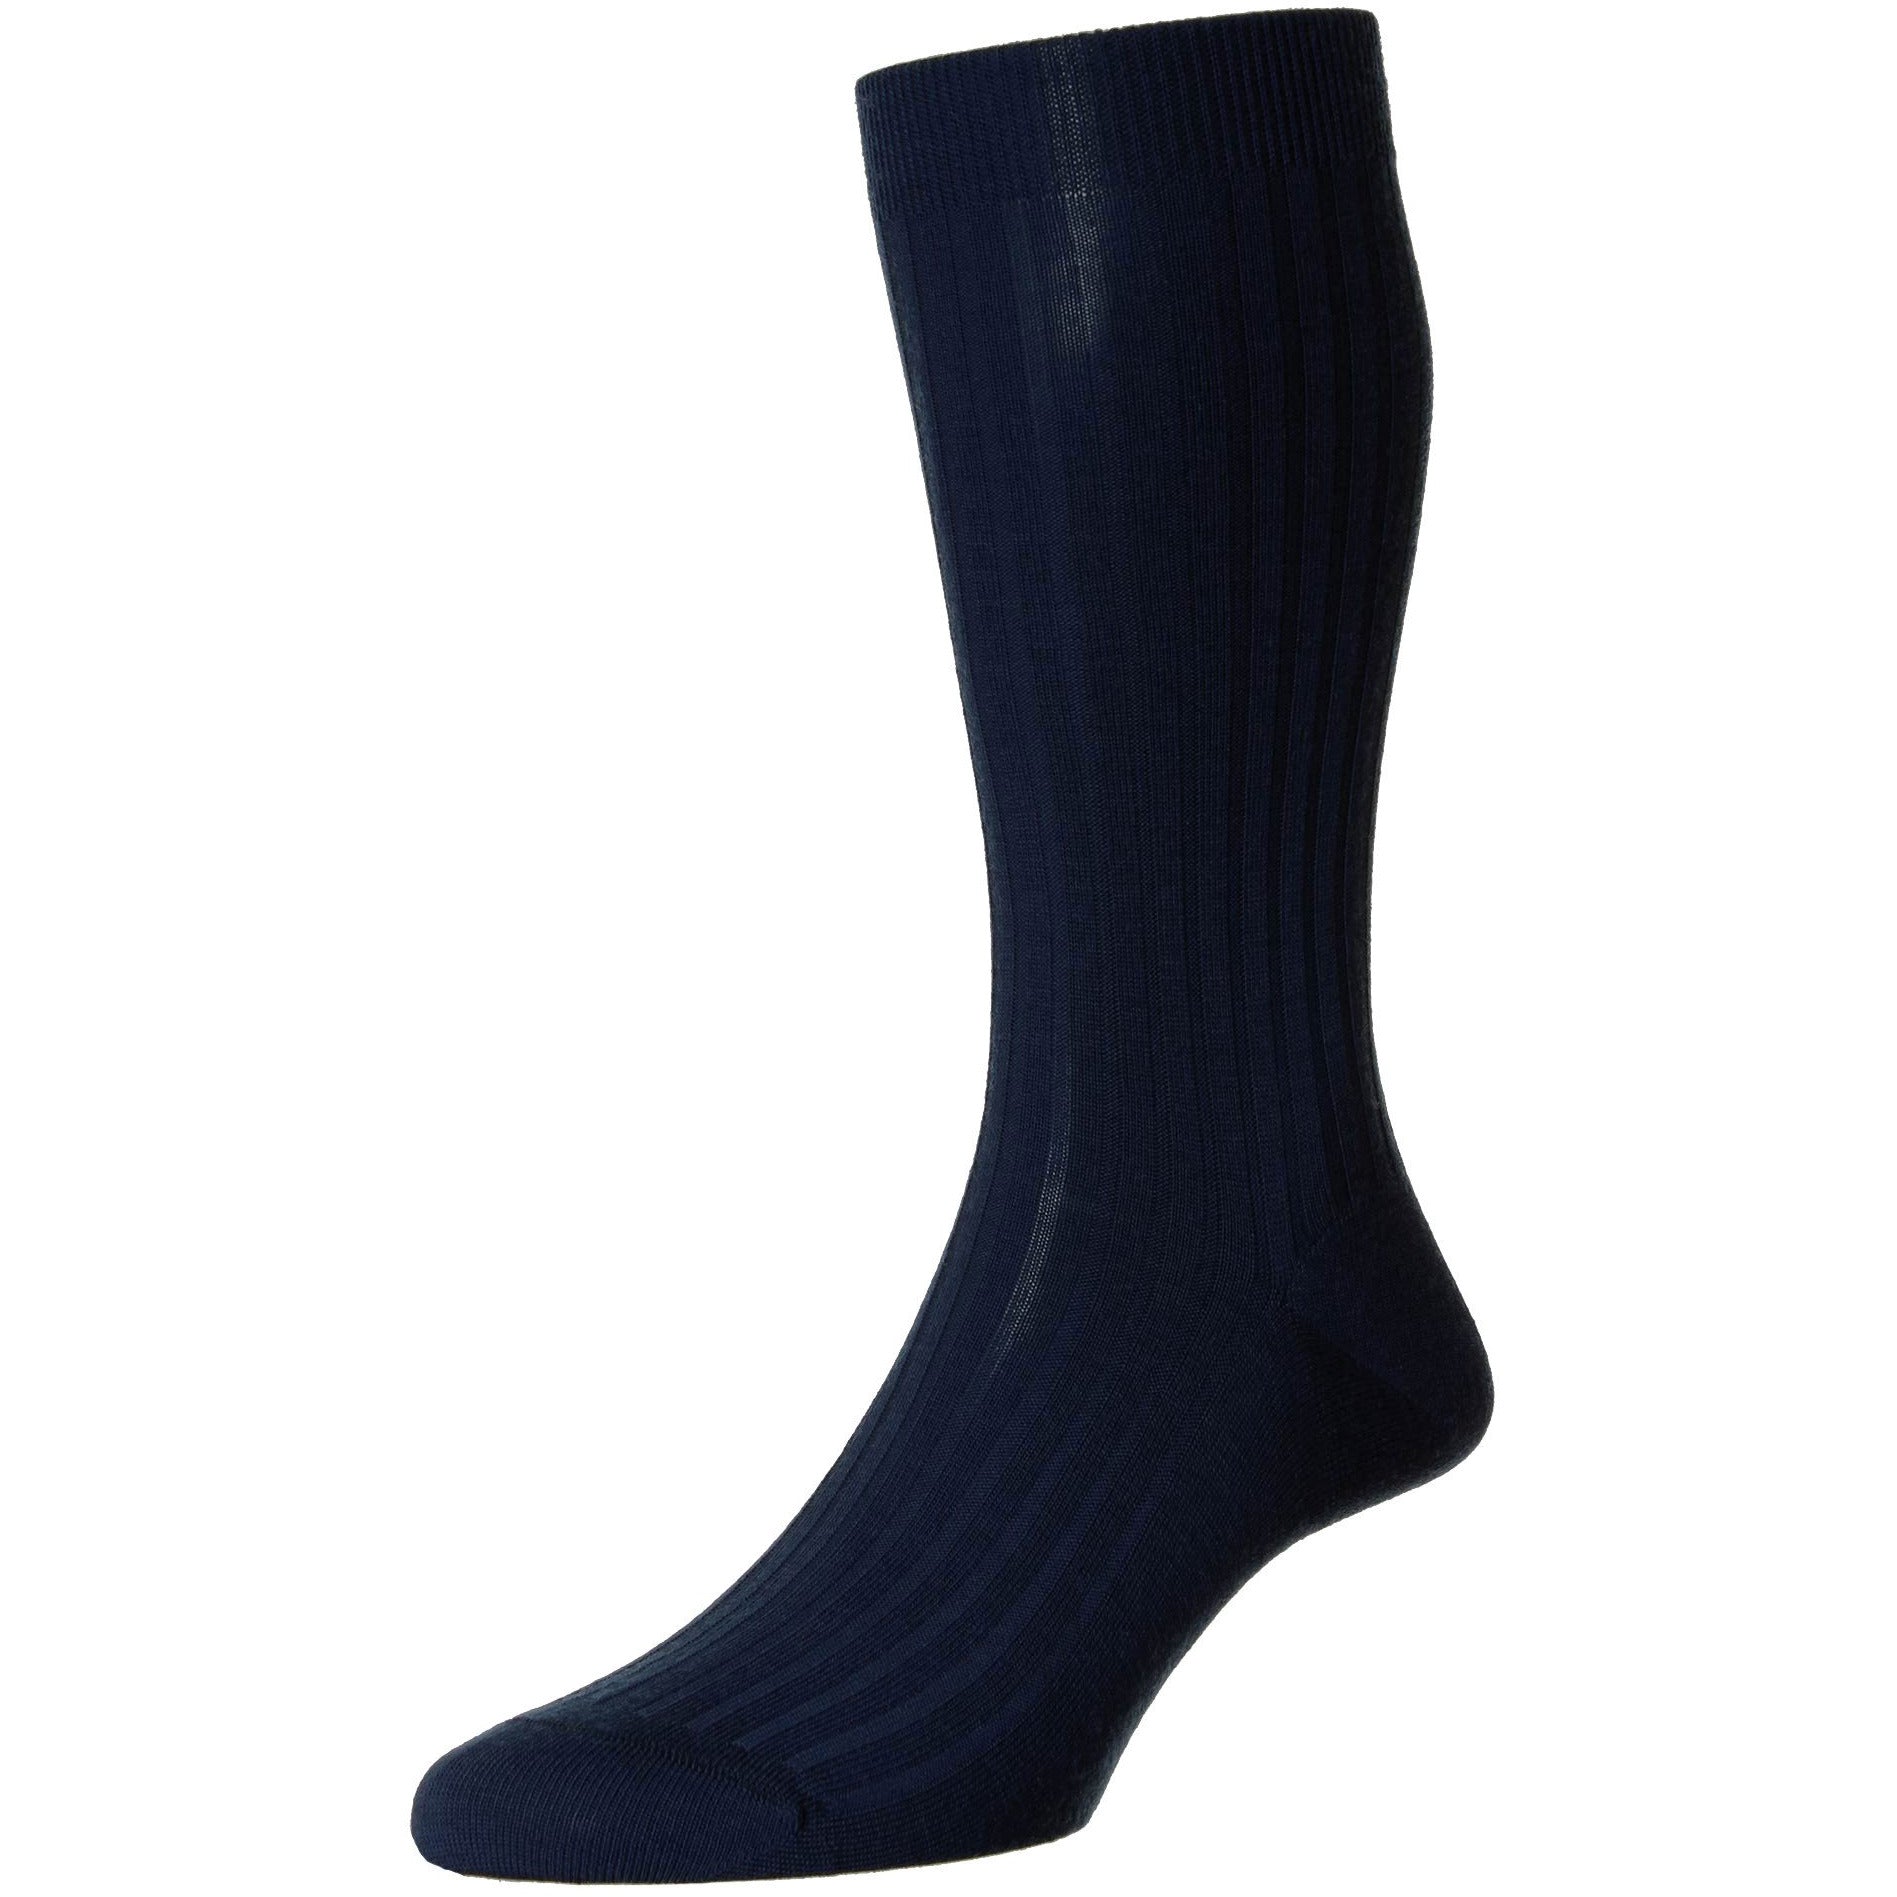 Mid-calf Wool Dress Sock, Men's Socks & Accessories